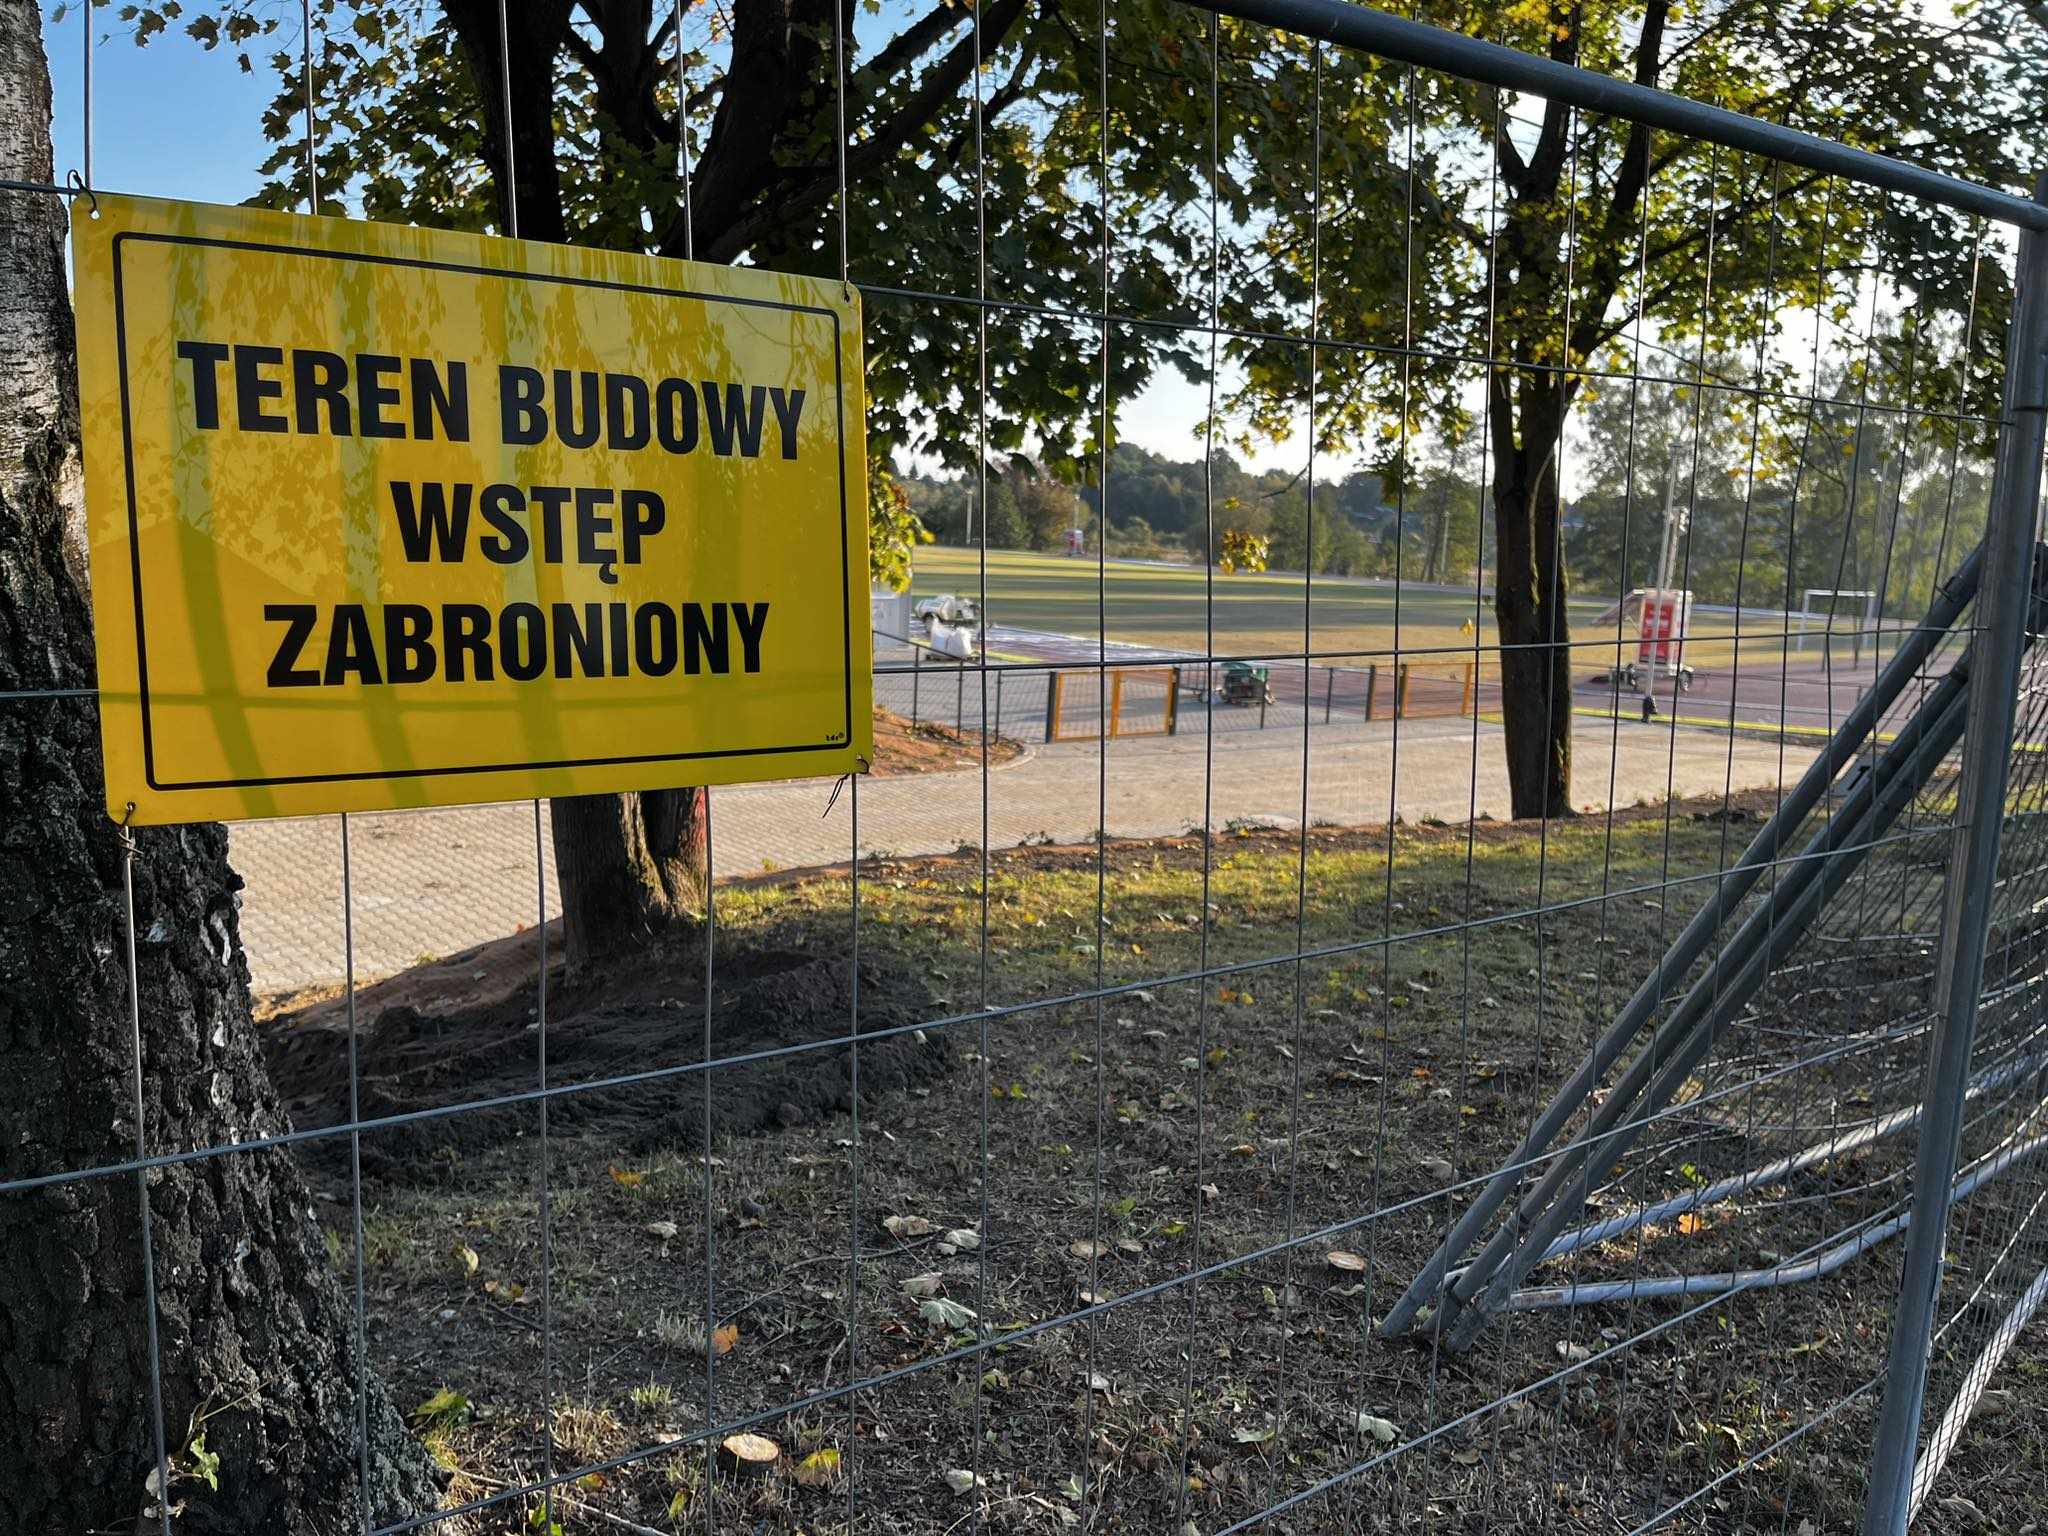 Ale wpadka Semeniuk-Patkowkiej i Cieszyńskiego! Otworzyli stadion... który jest w budowie polityka Nidzica, Wiadomości, zShowcase